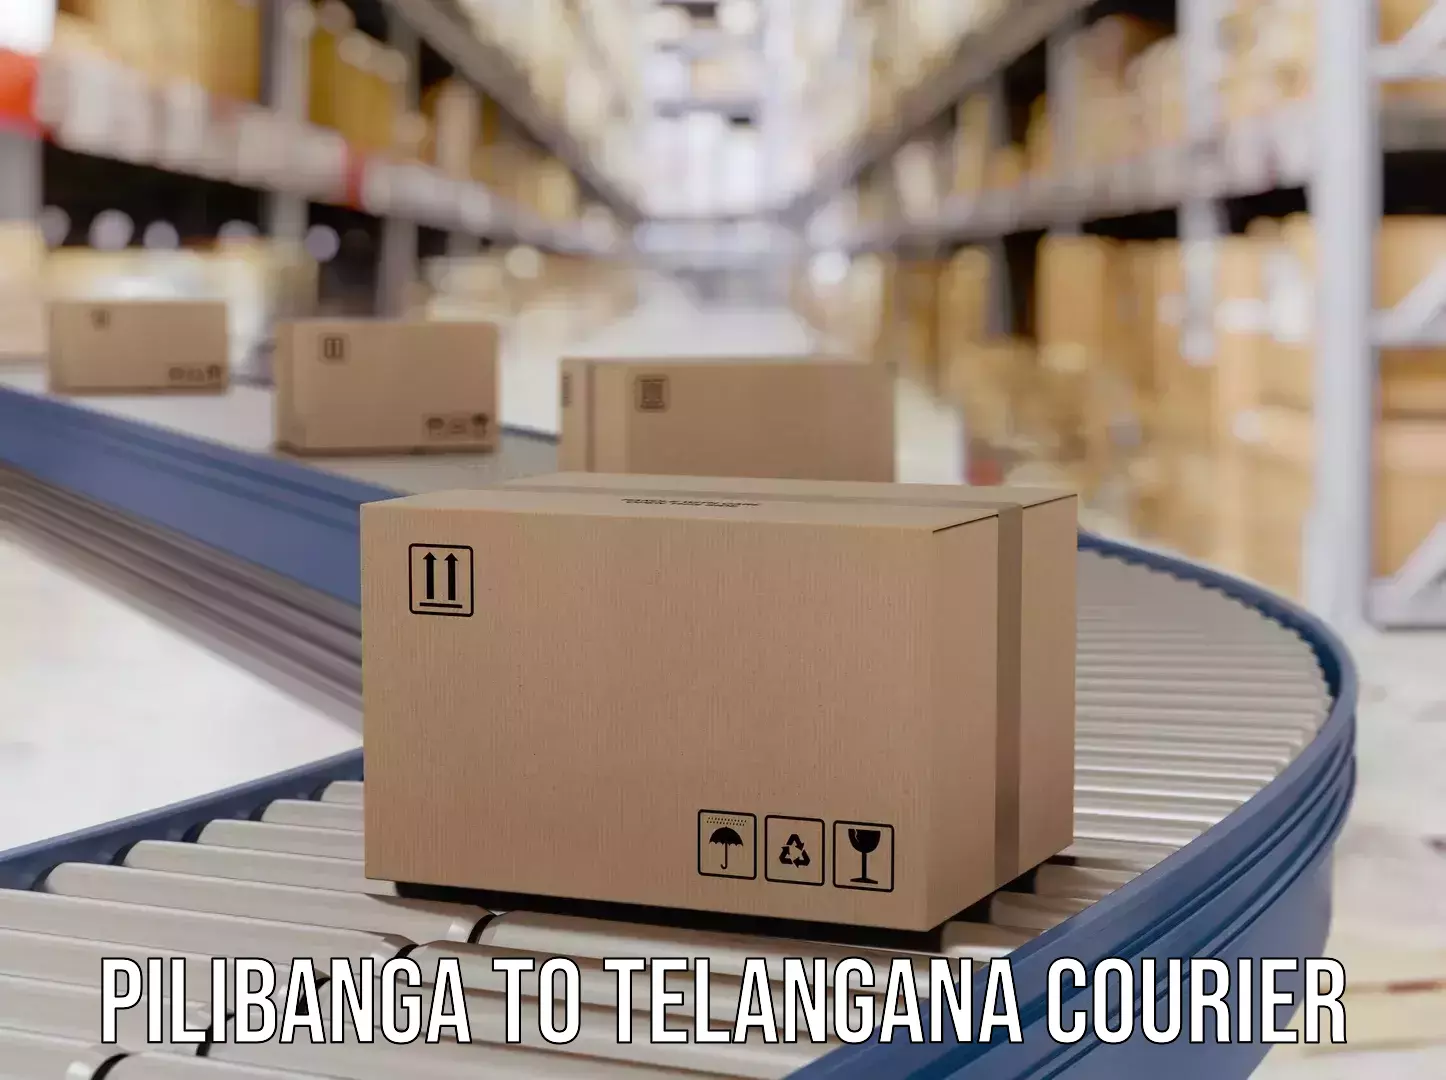 On-demand delivery Pilibanga to Veenavanka